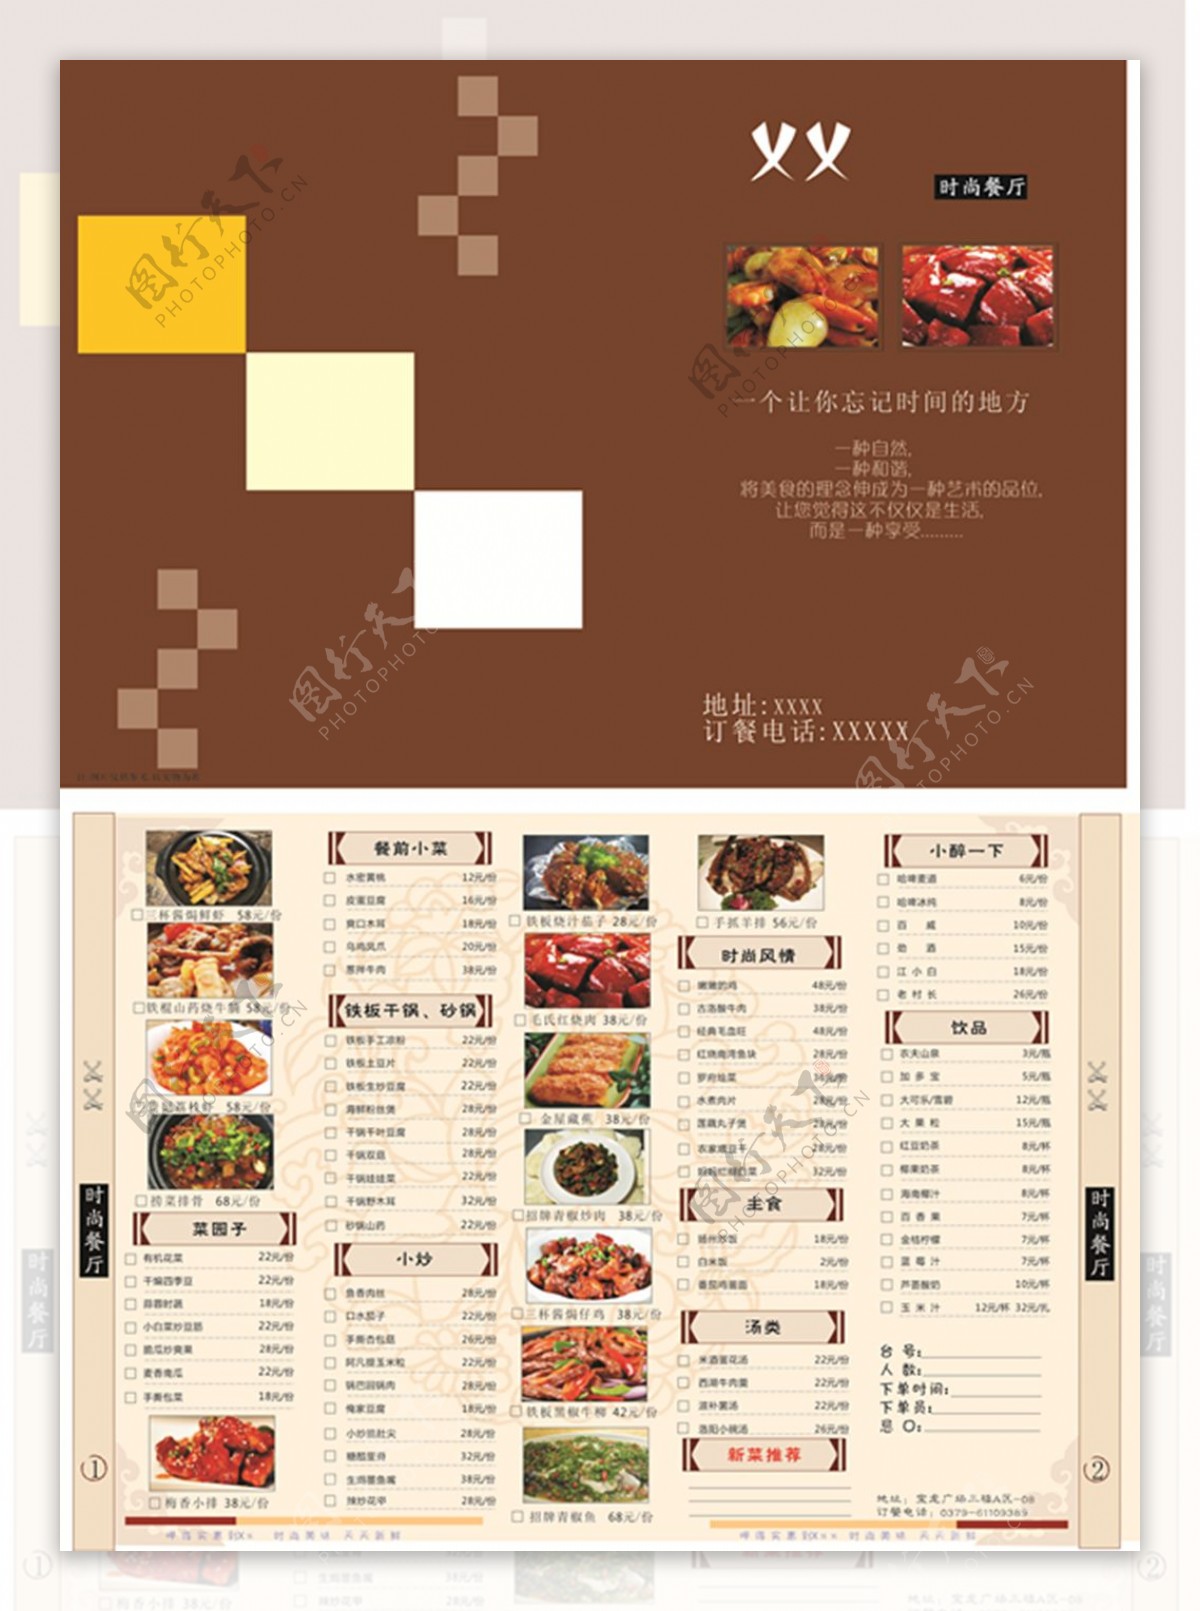 中国风简洁时尚美食宣传菜单